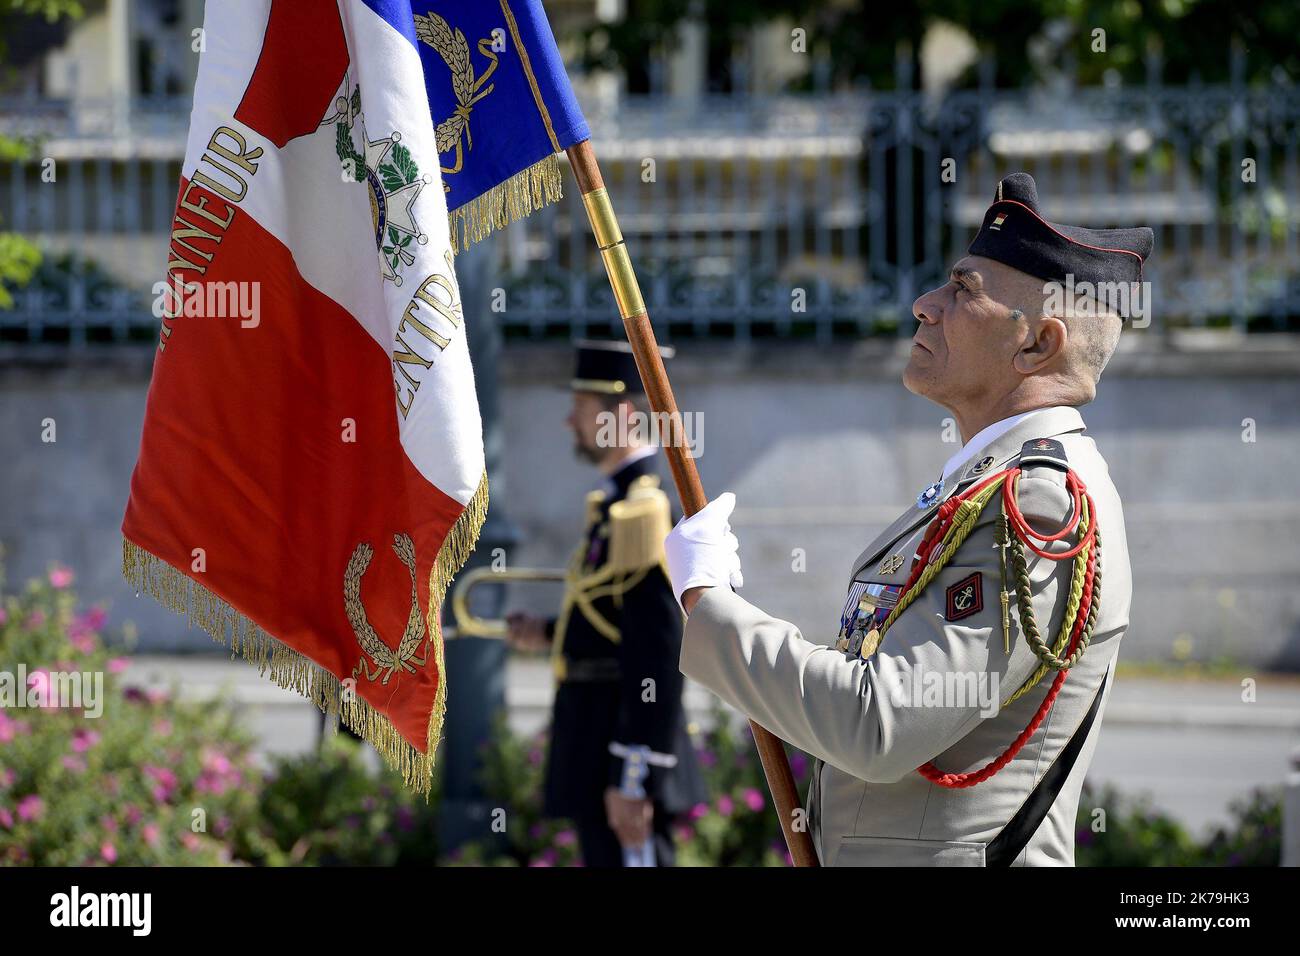 Francia, 8th 2020 maggio - cerimonia di commemorazione dell'armistizio del 8 maggio 1945 durante il confinamento in Francia legato al covid19. Parigi Foto Stock